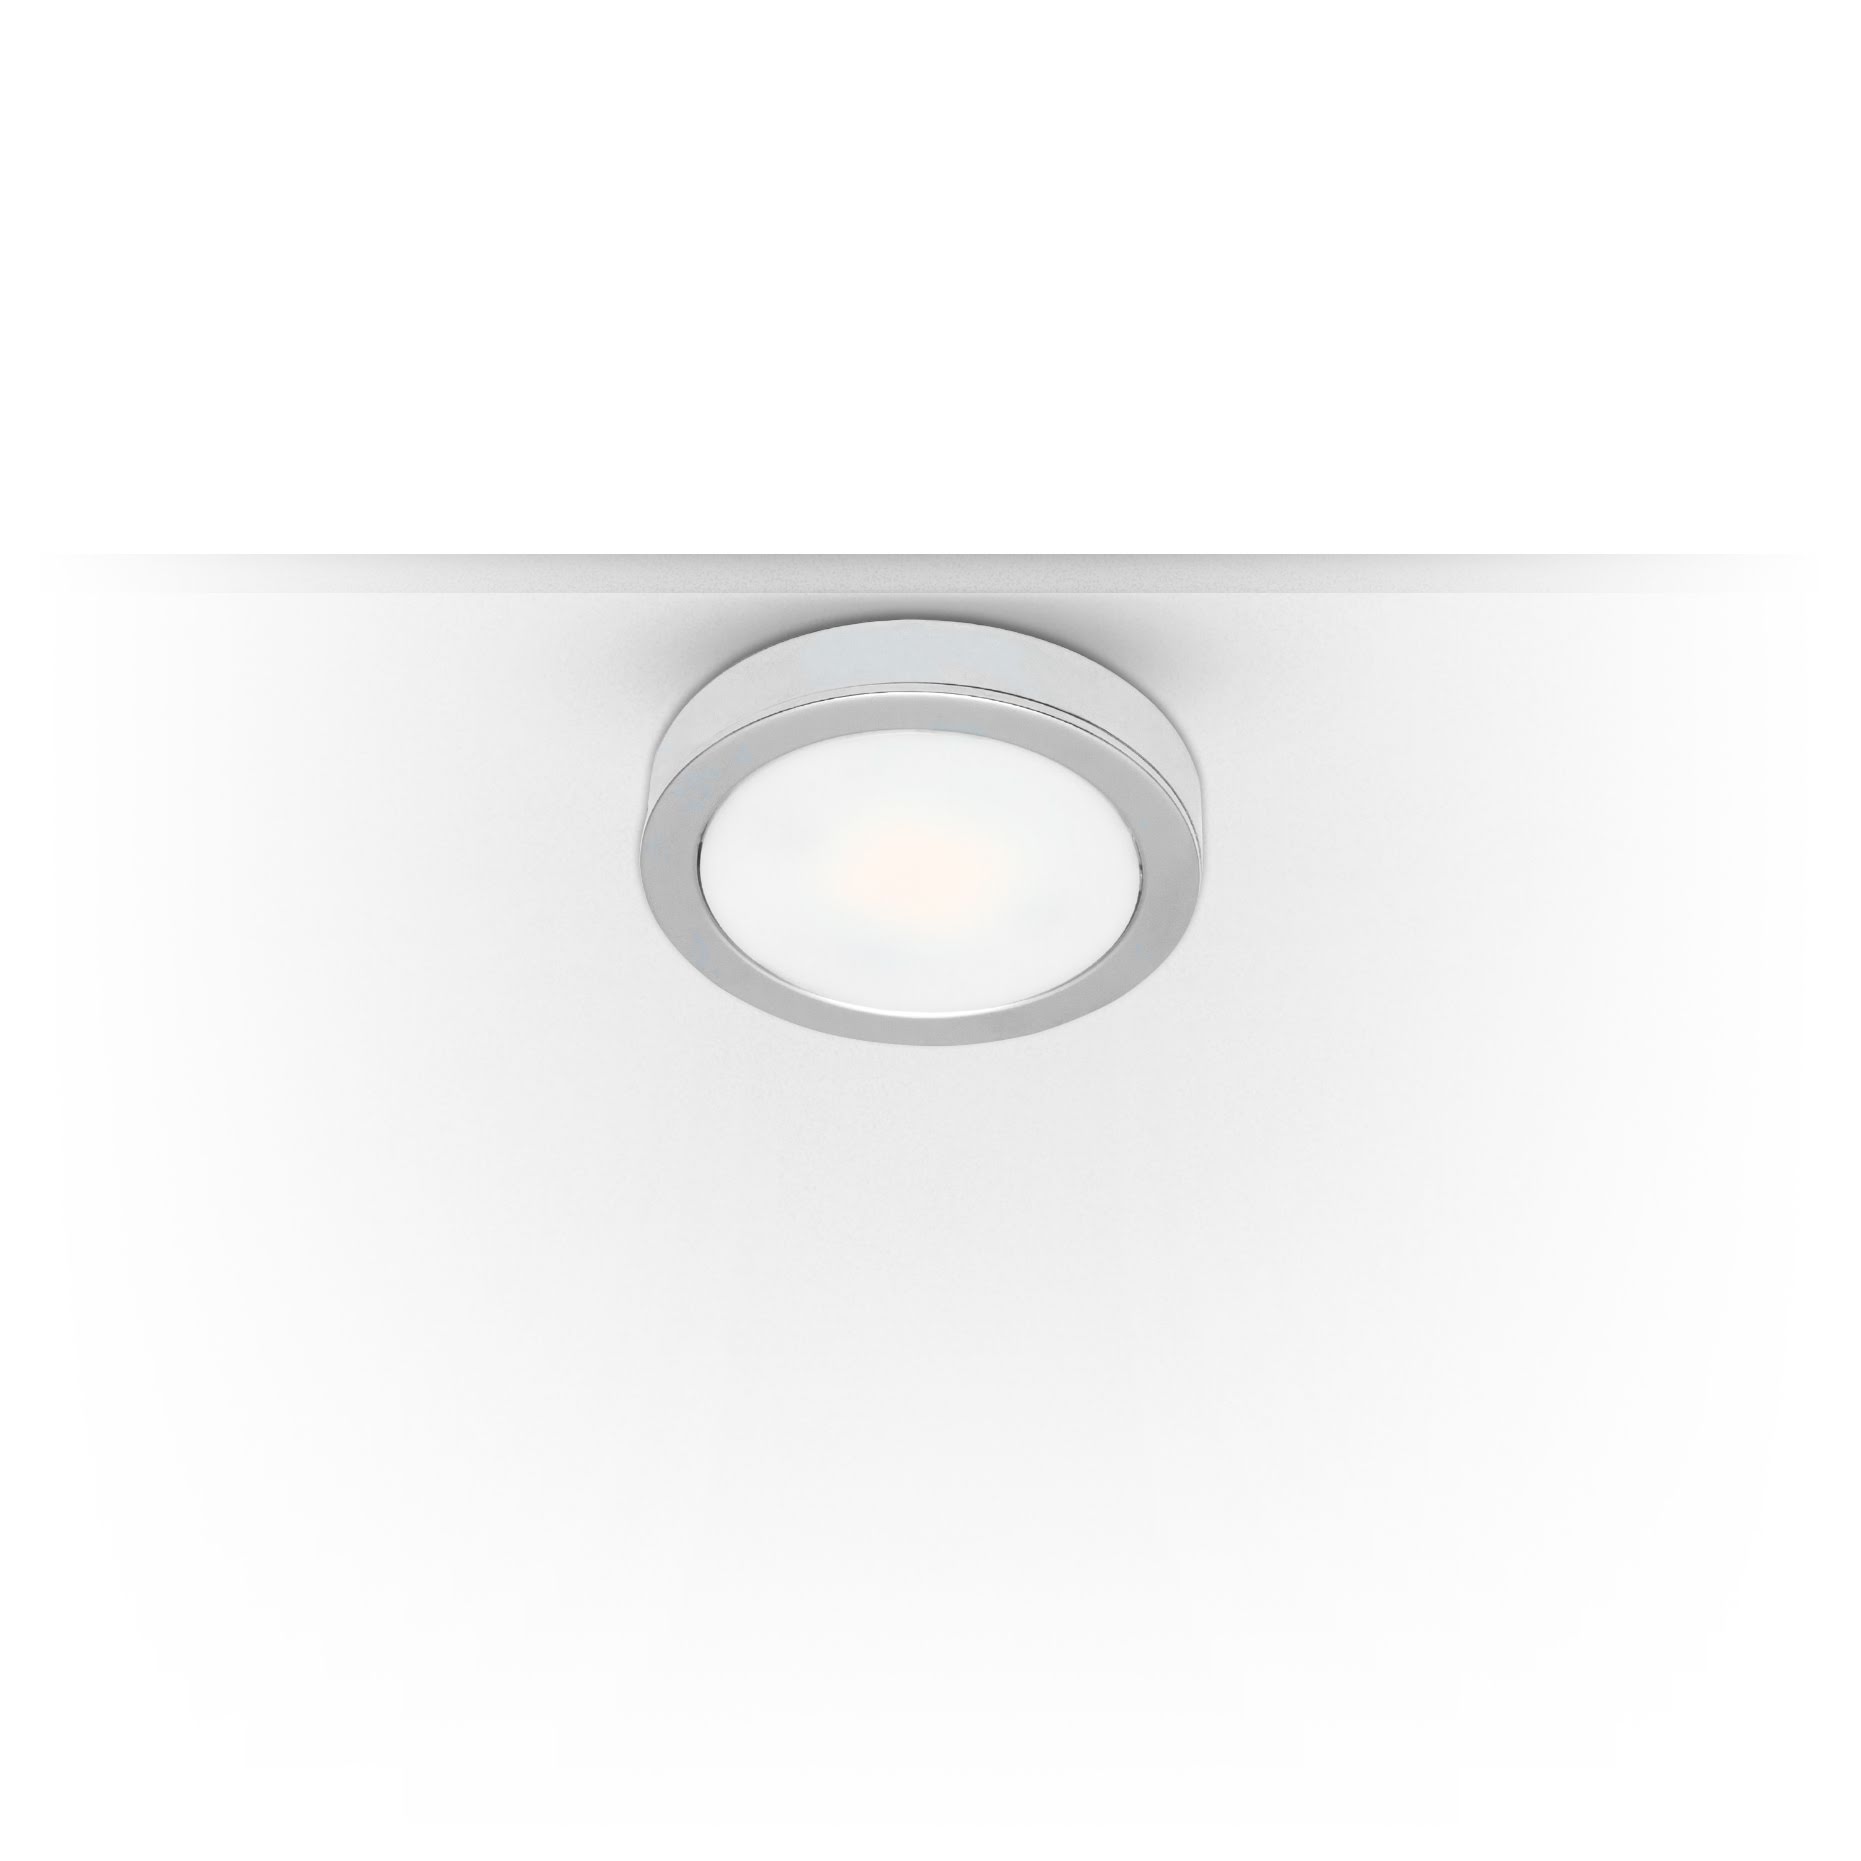 Xerolight LED Förhöjningsring krom 10mm